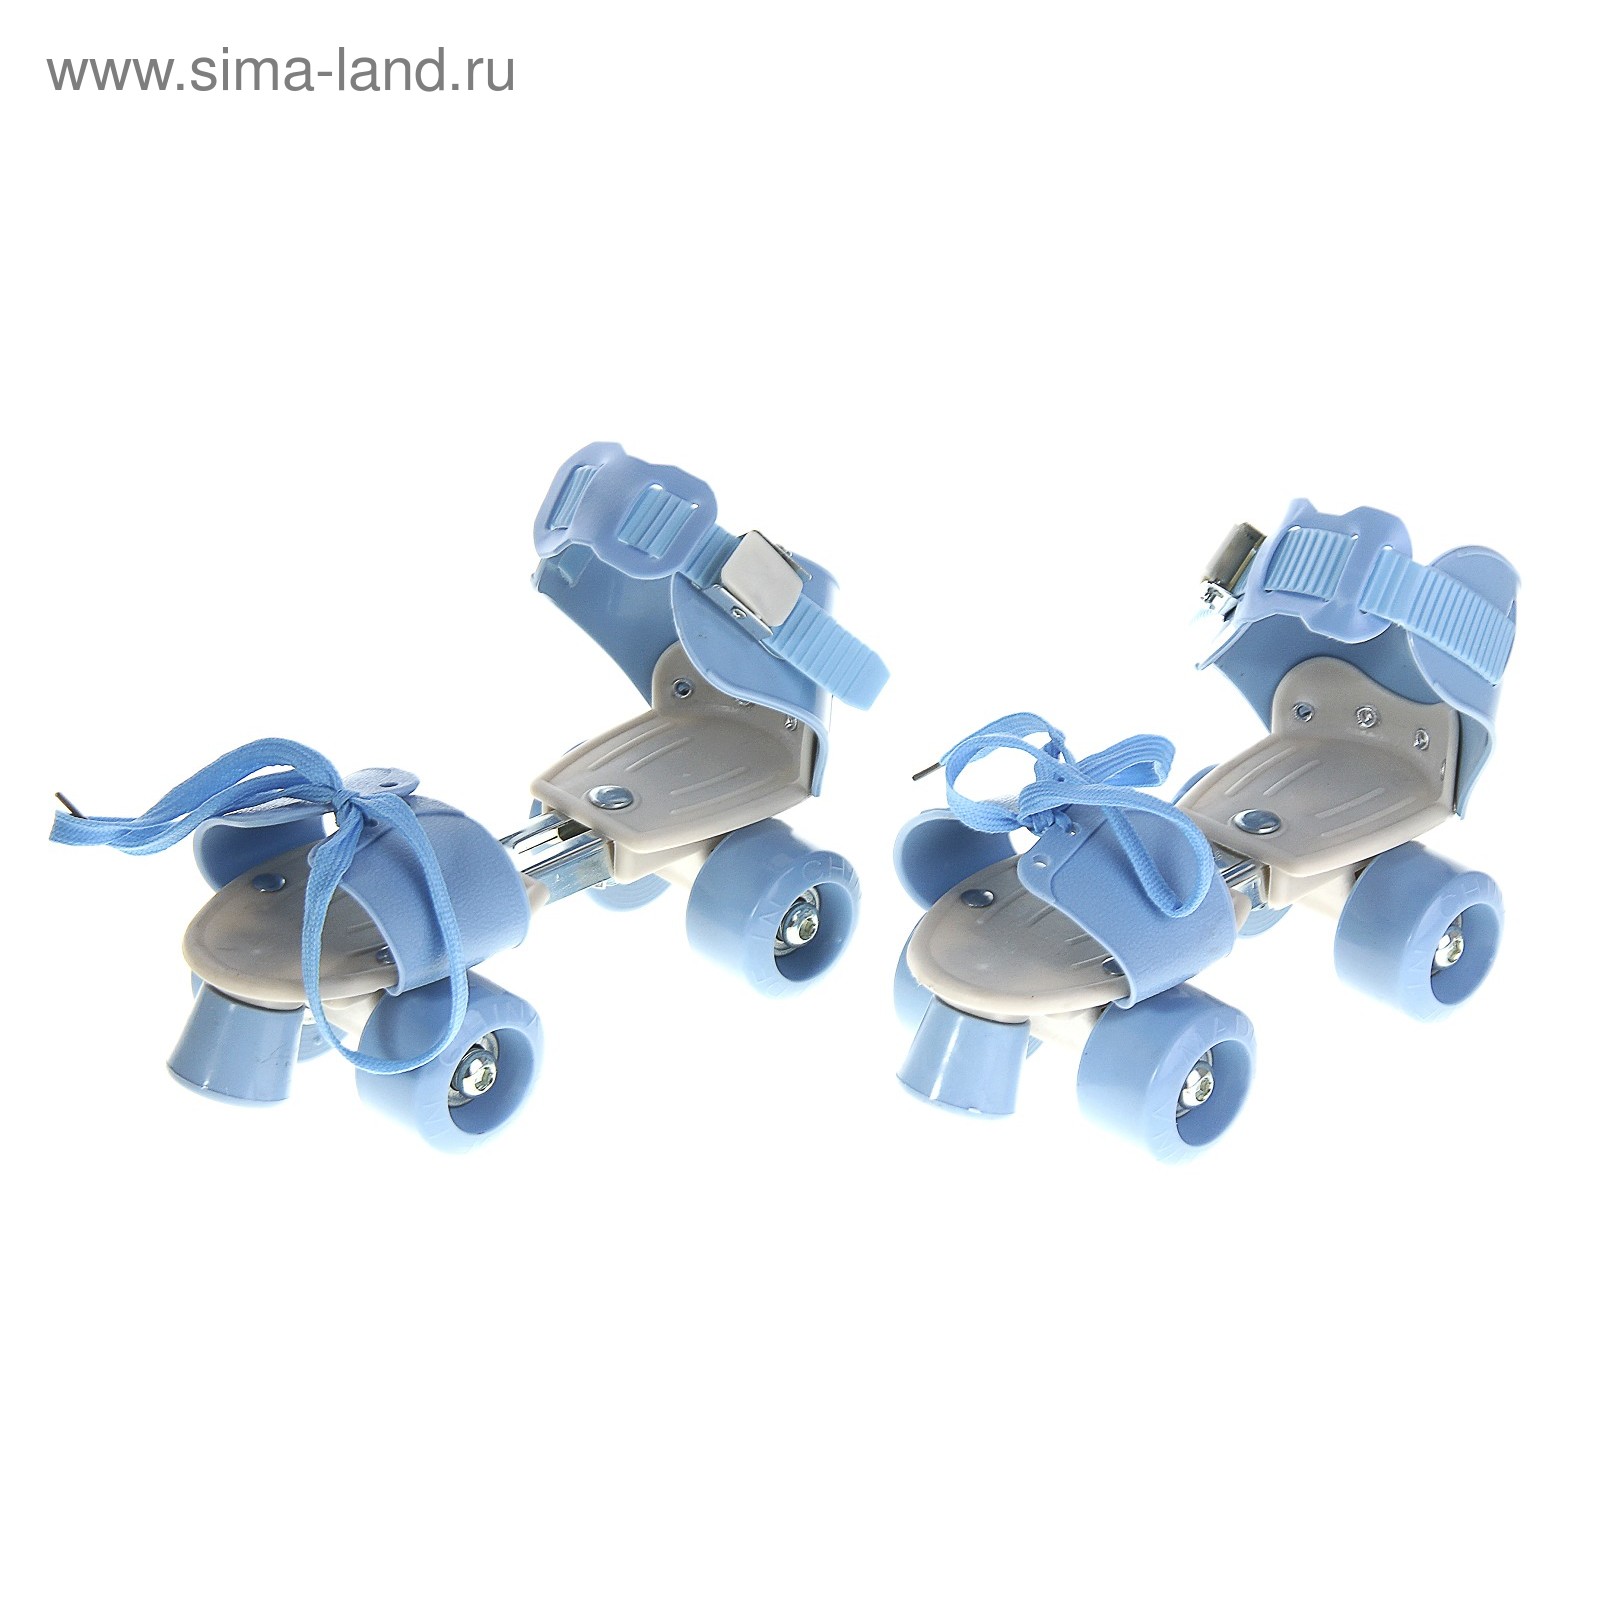 Ролики для обуви раздвижные, размер 16-21 см, колеса РVC d = 45 мм, цвет голубой